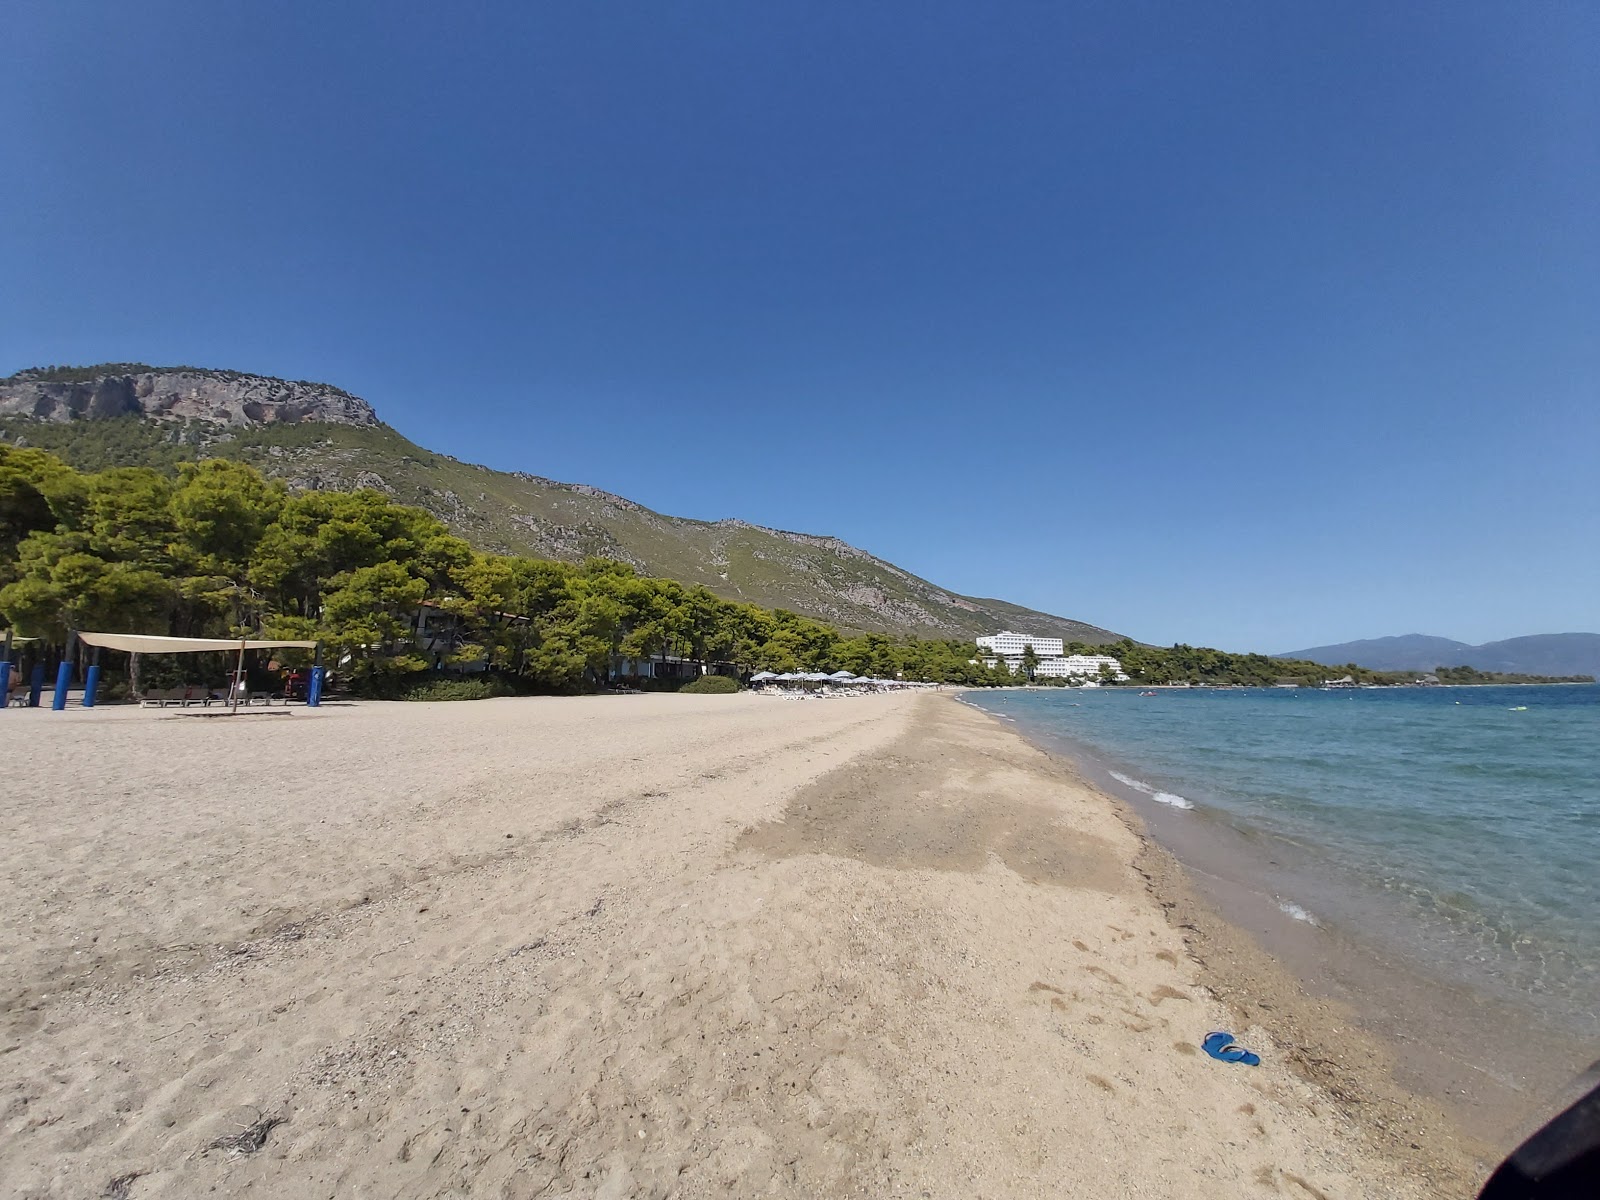 Fotografie cu Gregolimano beach cu o suprafață de apa pură turcoaz